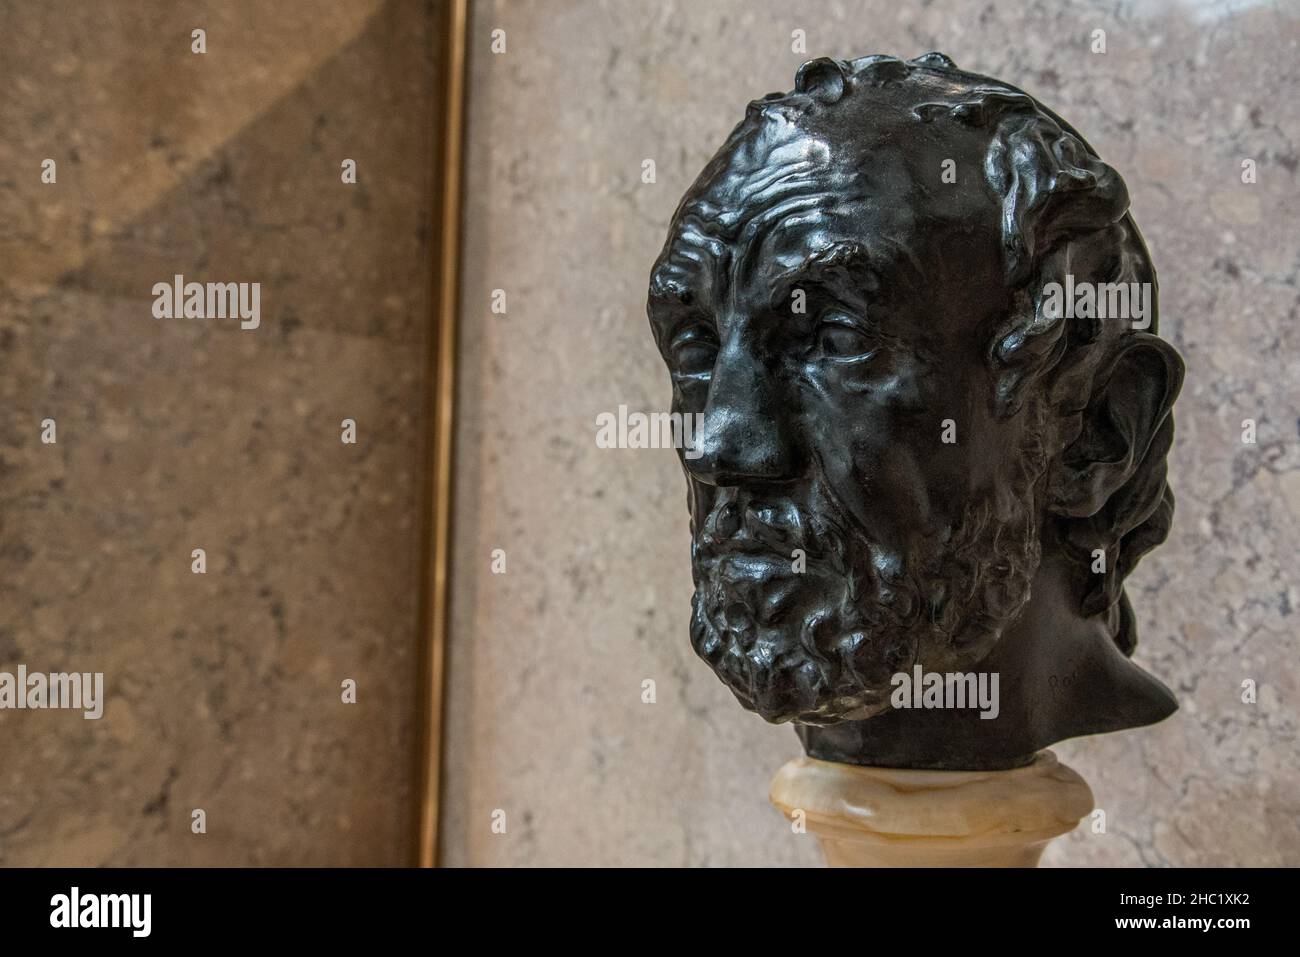 PHILADELPHIE, États-Unis - 22 AOÛT 2019 : sculpture d'Auguste Rodin d'un homme au nez brisé à Philadelphie, États-Unis Banque D'Images